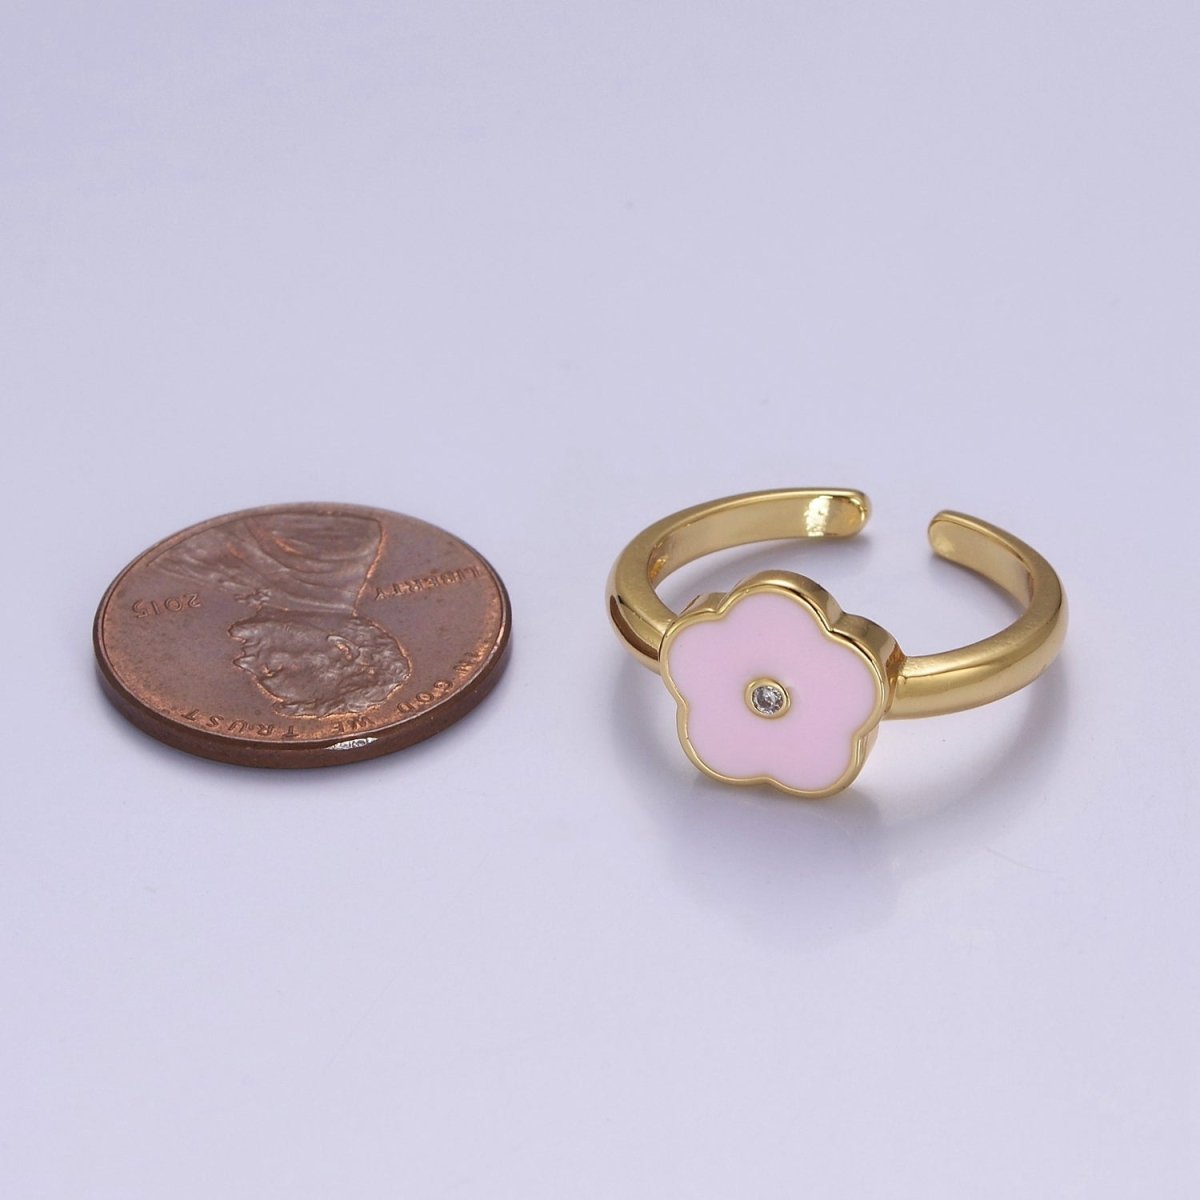 Dainty Enamel Pink Daisy Flower Ring O-2158 - DLUXCA